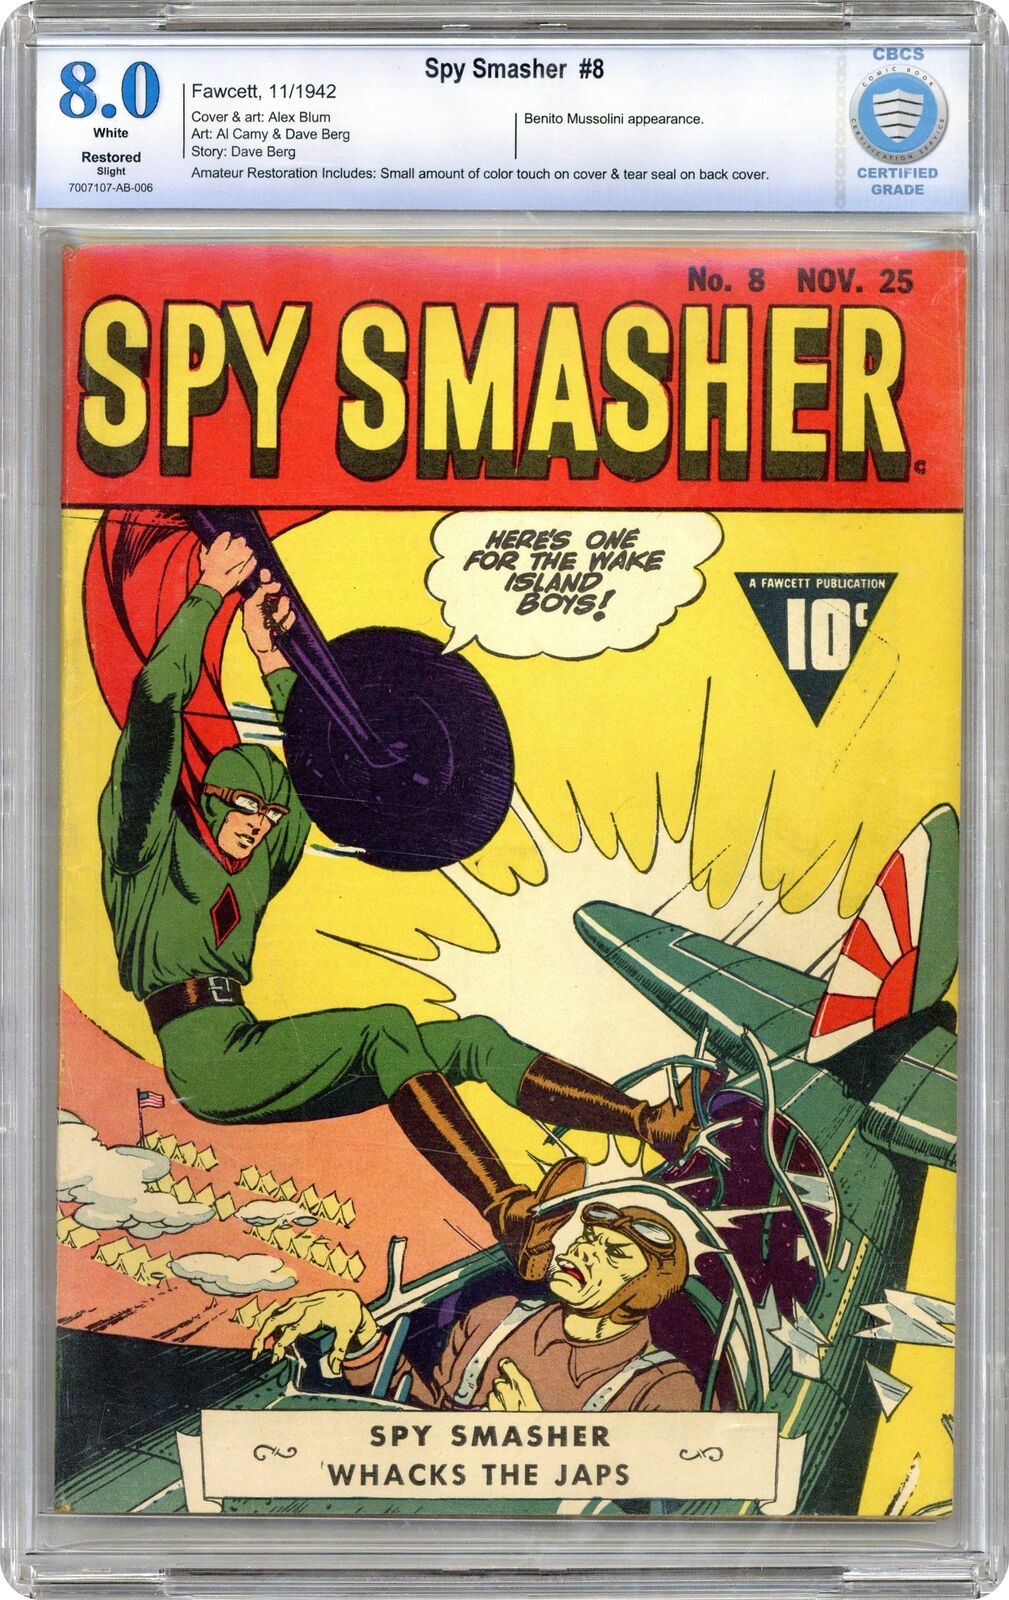 Spy Smasher #8 CBCS 8.0 RESTORED 1942 7007107-AB-006